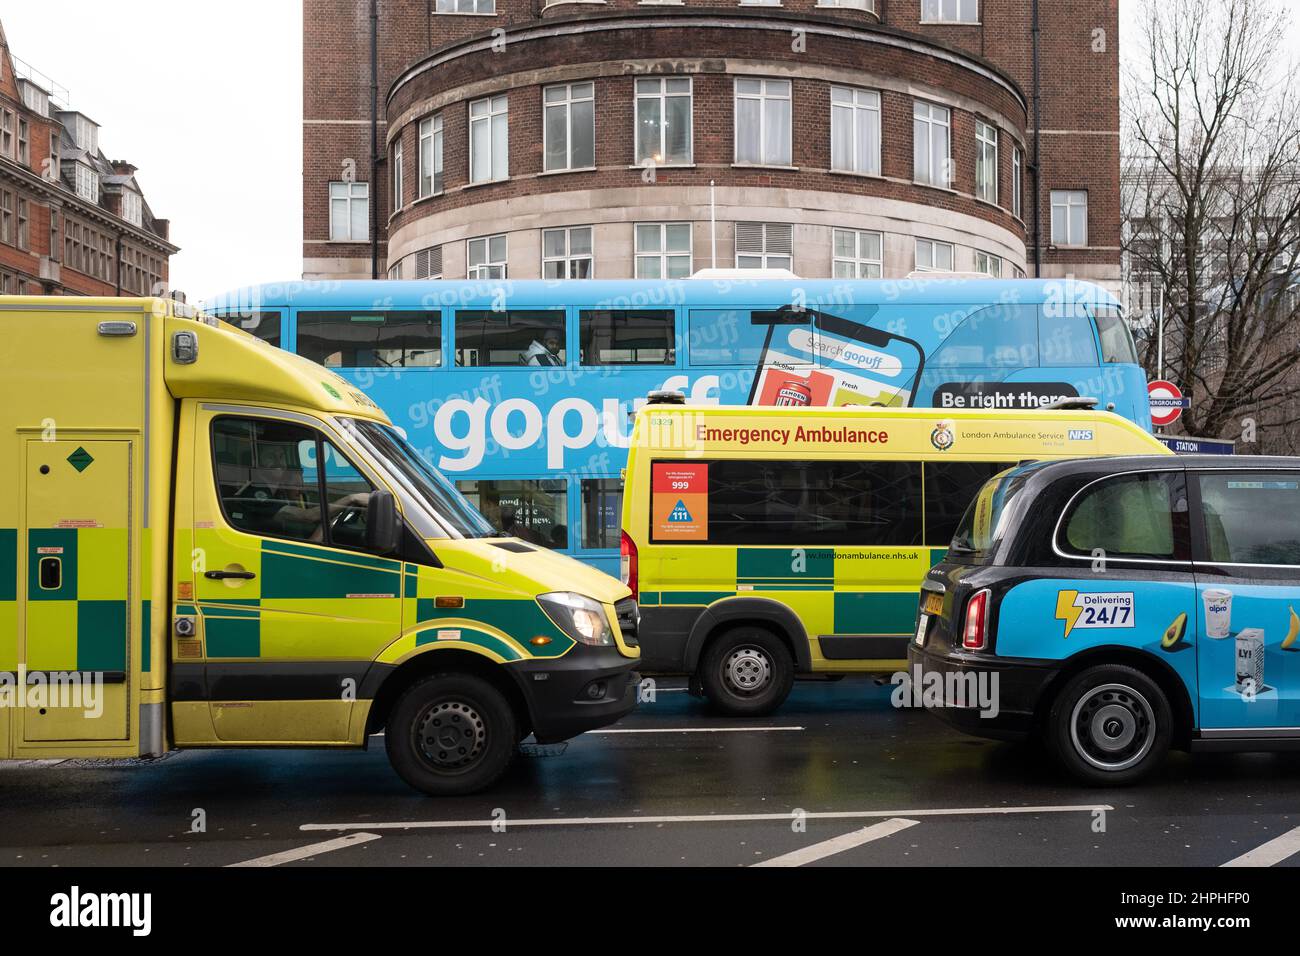 Schöner Farbabgleich vor der Warren Street Station, London, Großbritannien. Ein London Taxi, London Bus und Sanitäter Fahrzeuge alle farblich passend Stockfoto